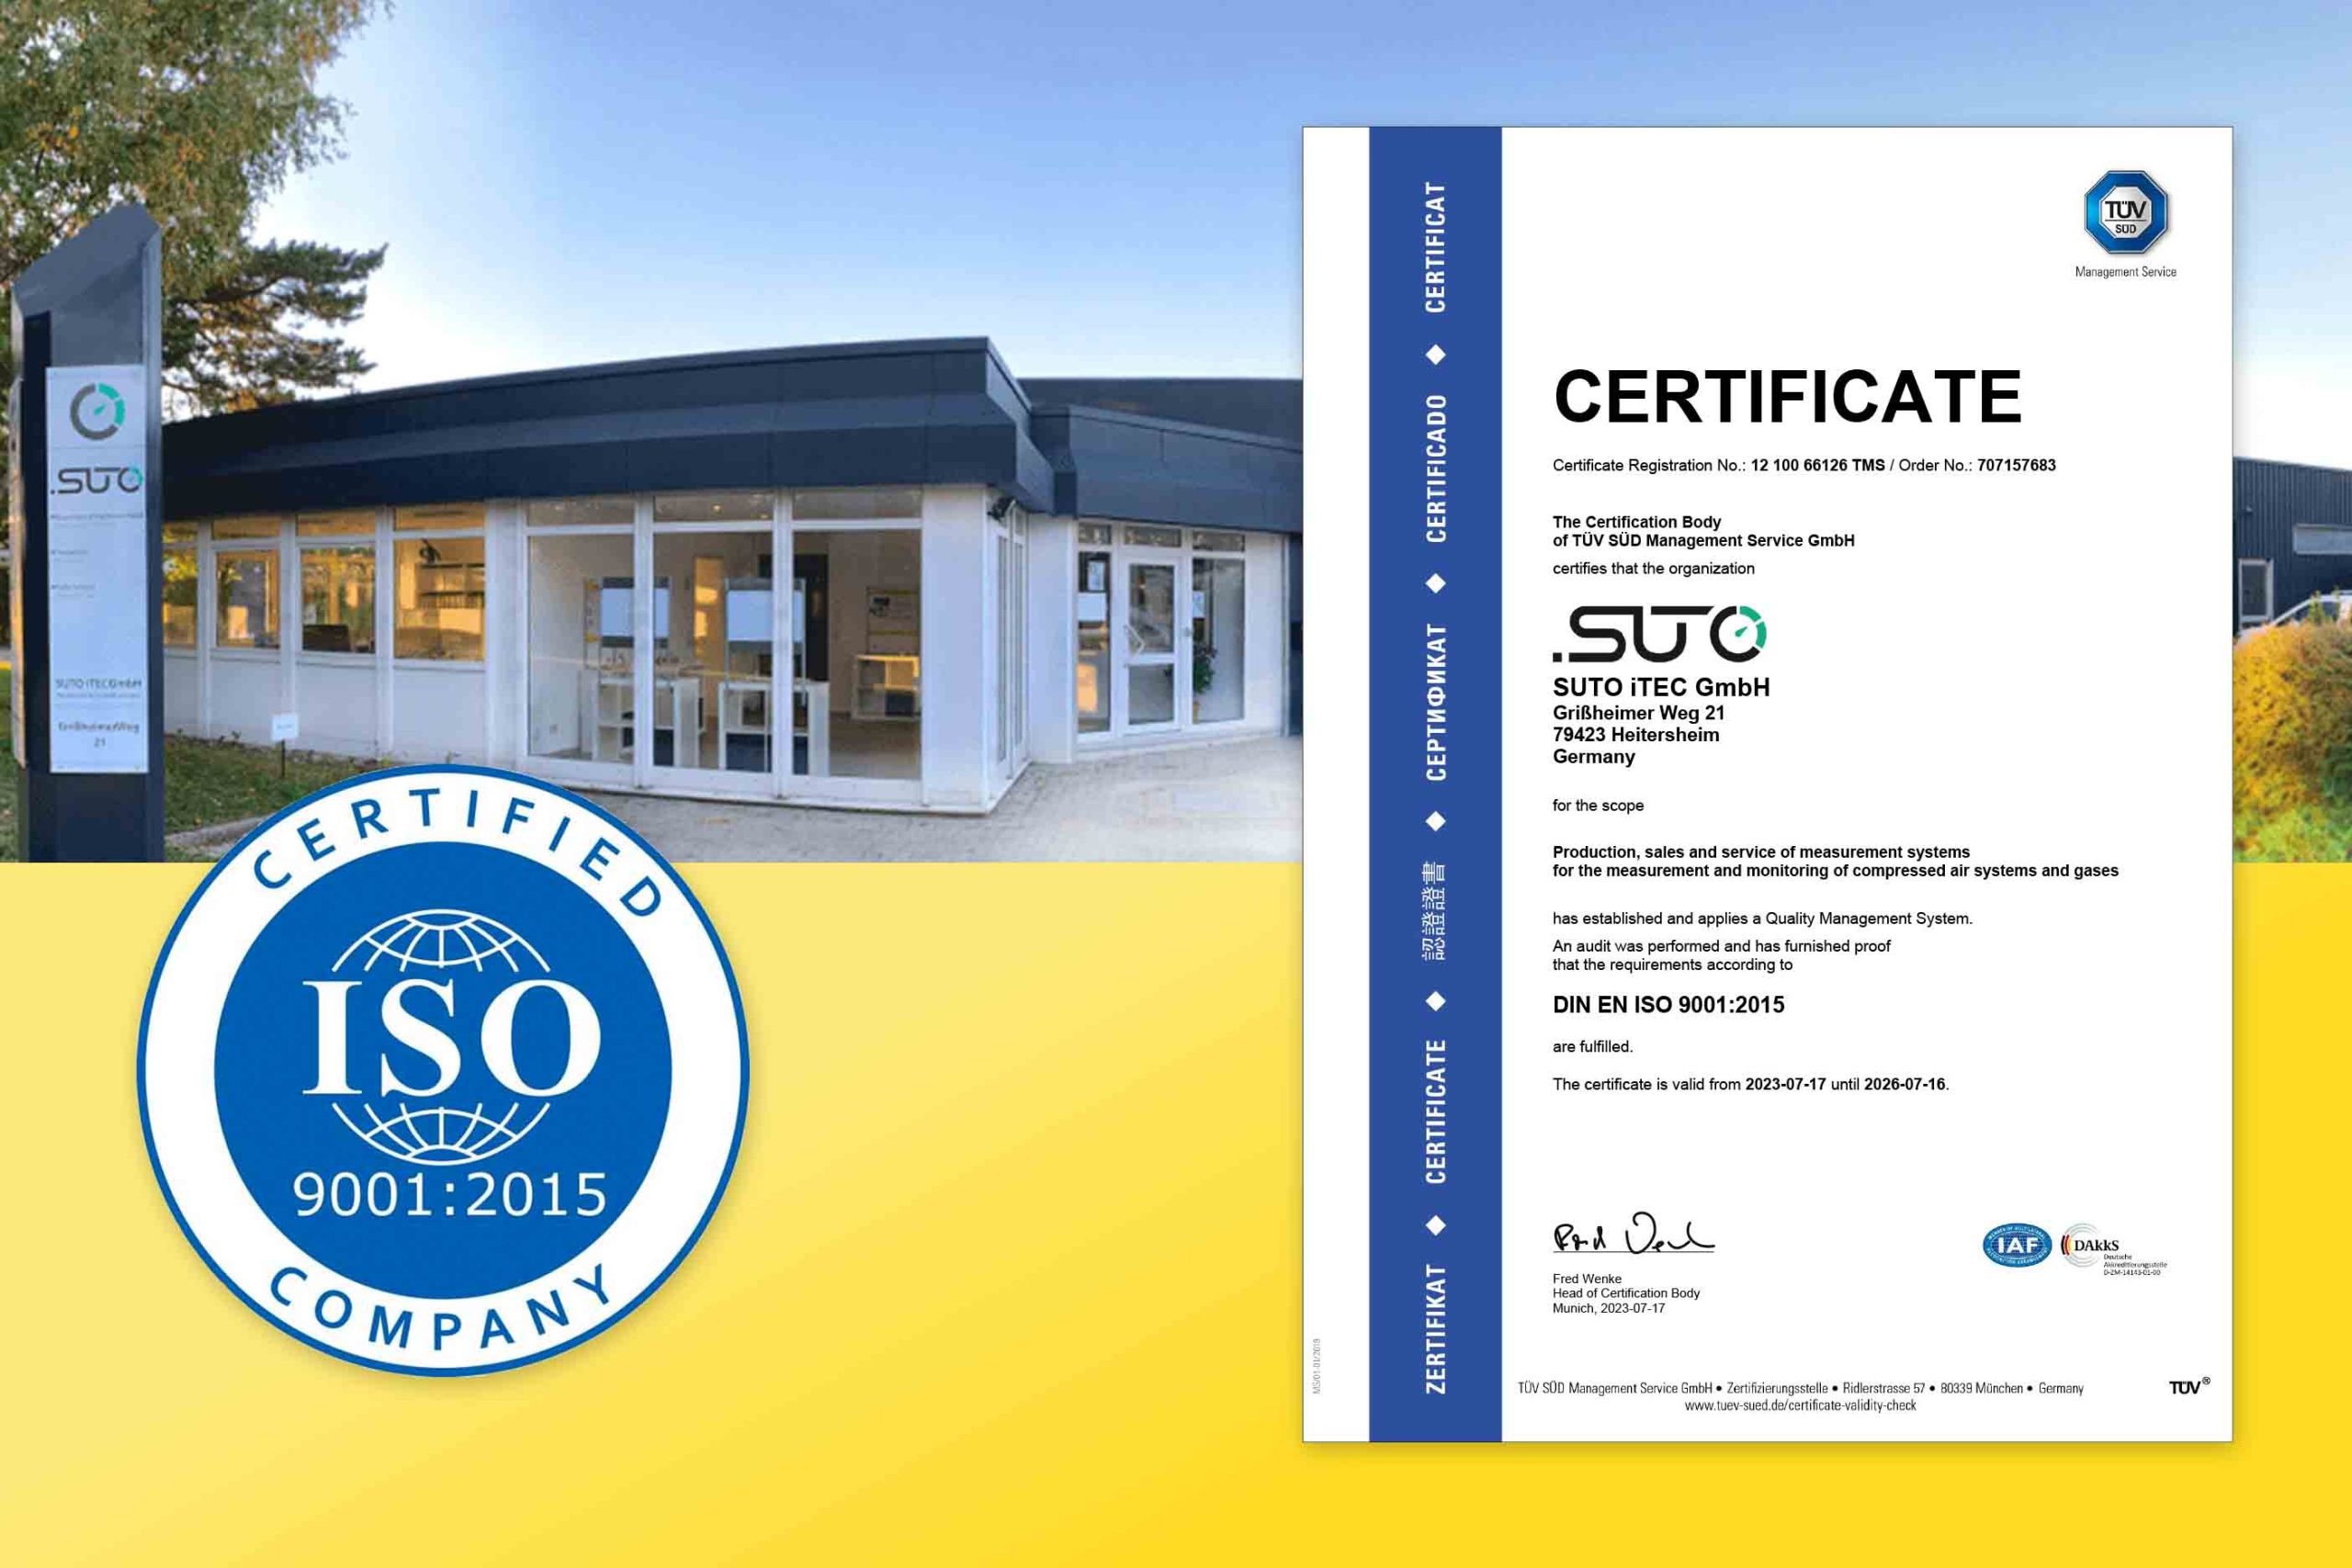 La sede centrale di SUTO iTEC in Germania ottiene la certificazione ISO 9001:2015